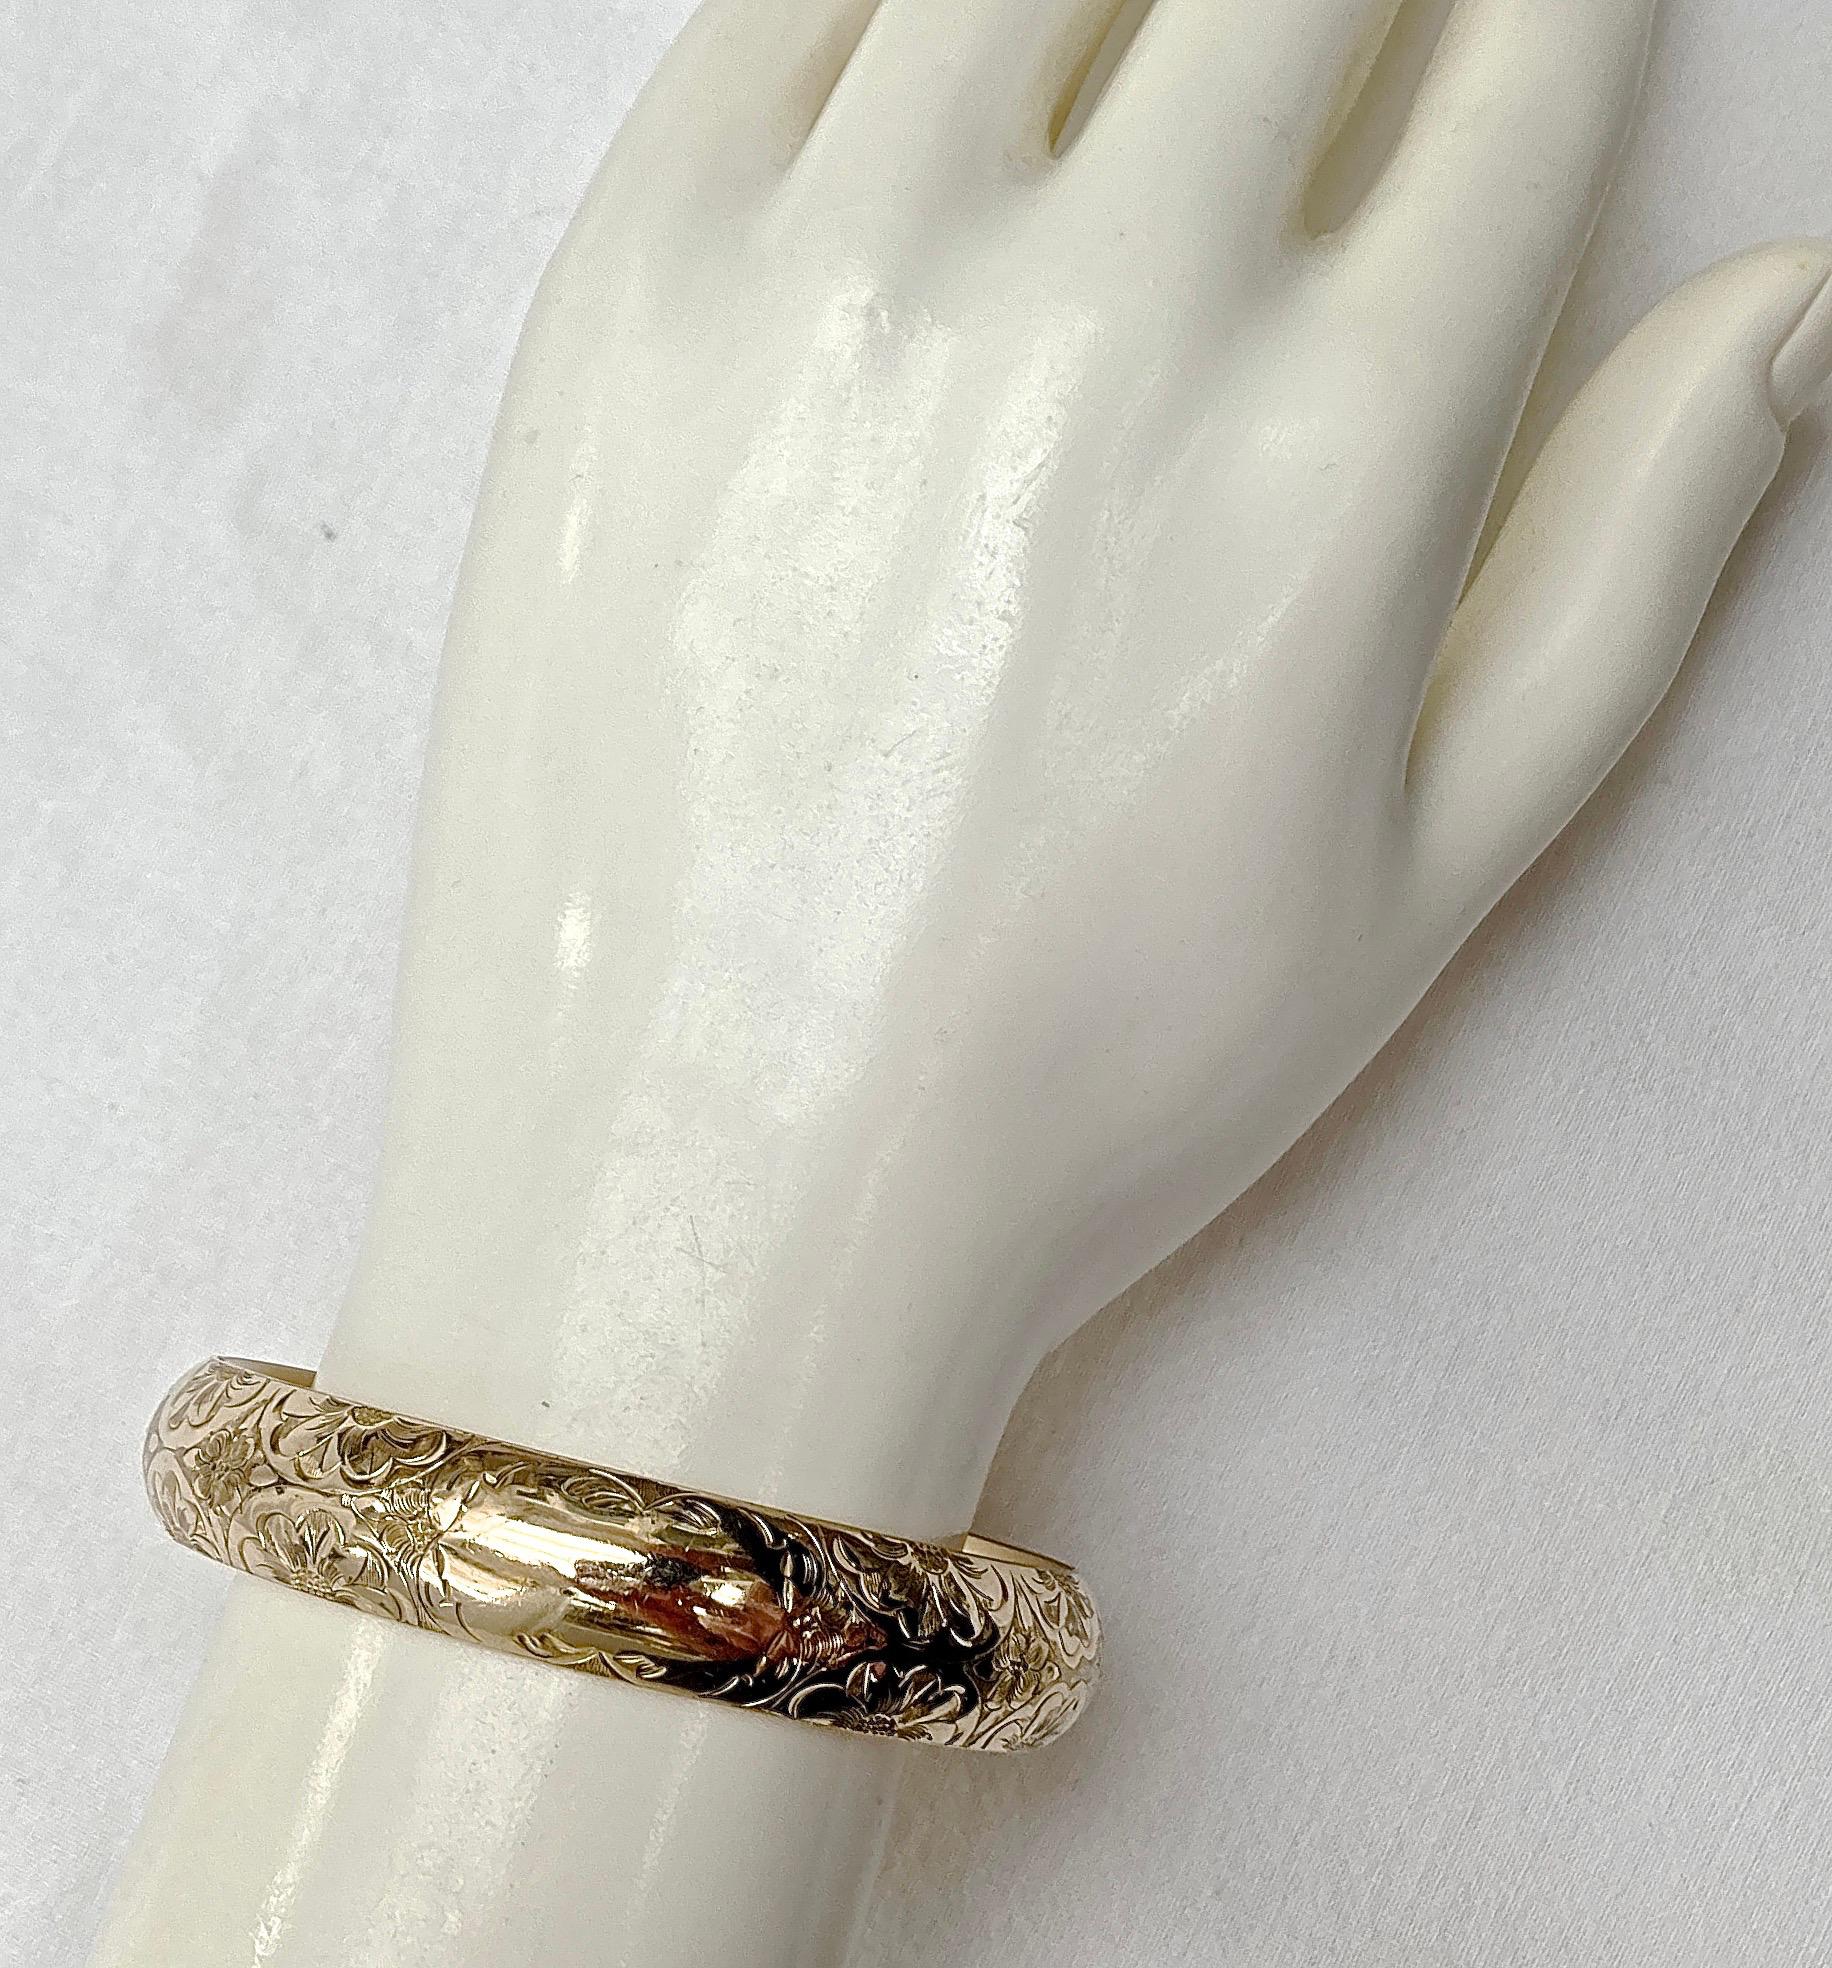 J. F. Sturdy & Sons Antique Gold Filled Floral Engraved Bangle Bracelet 1